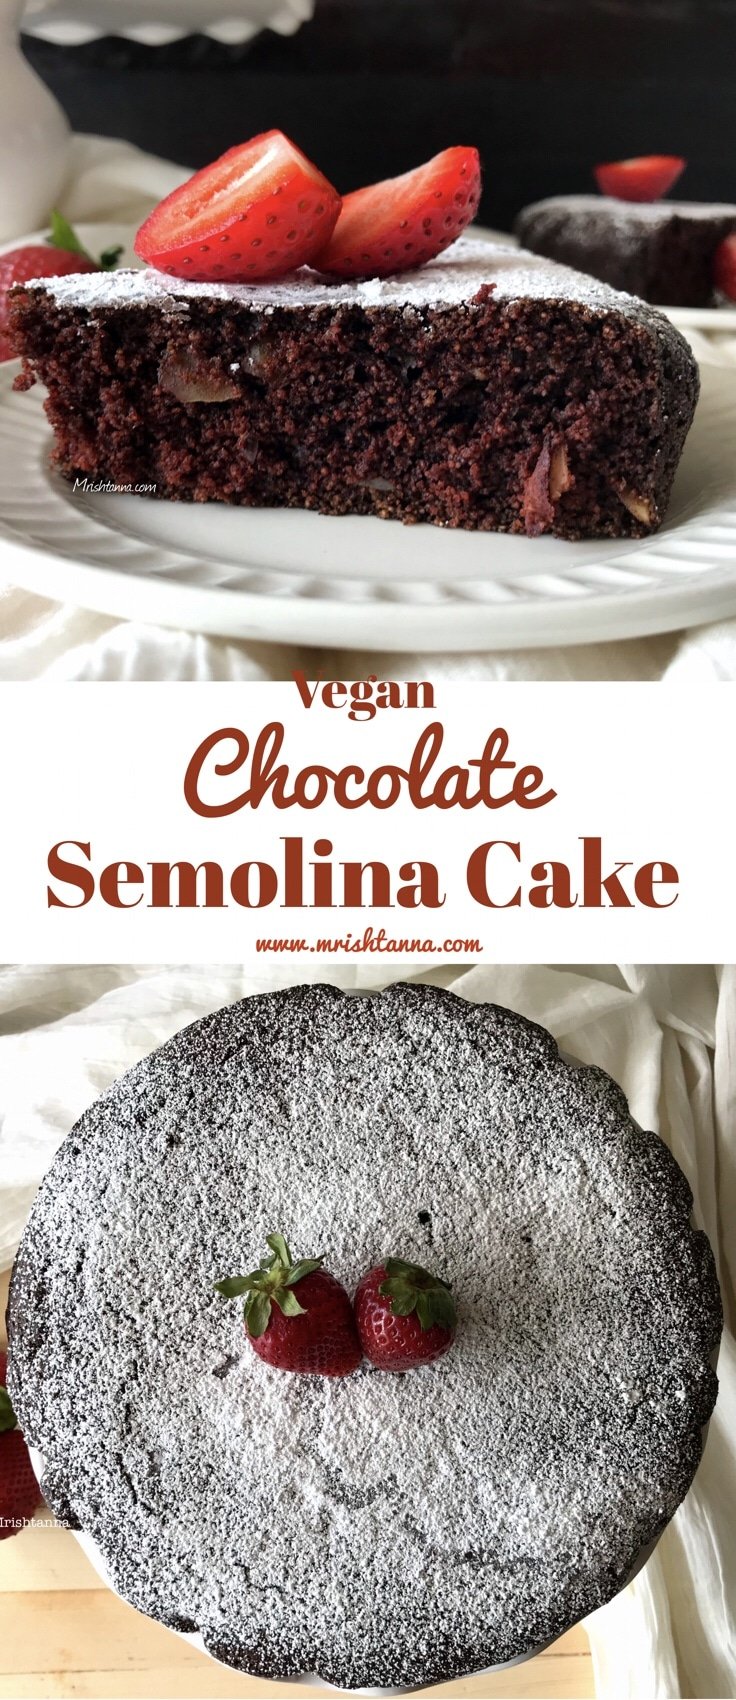 A close up of chocolate semolina cake